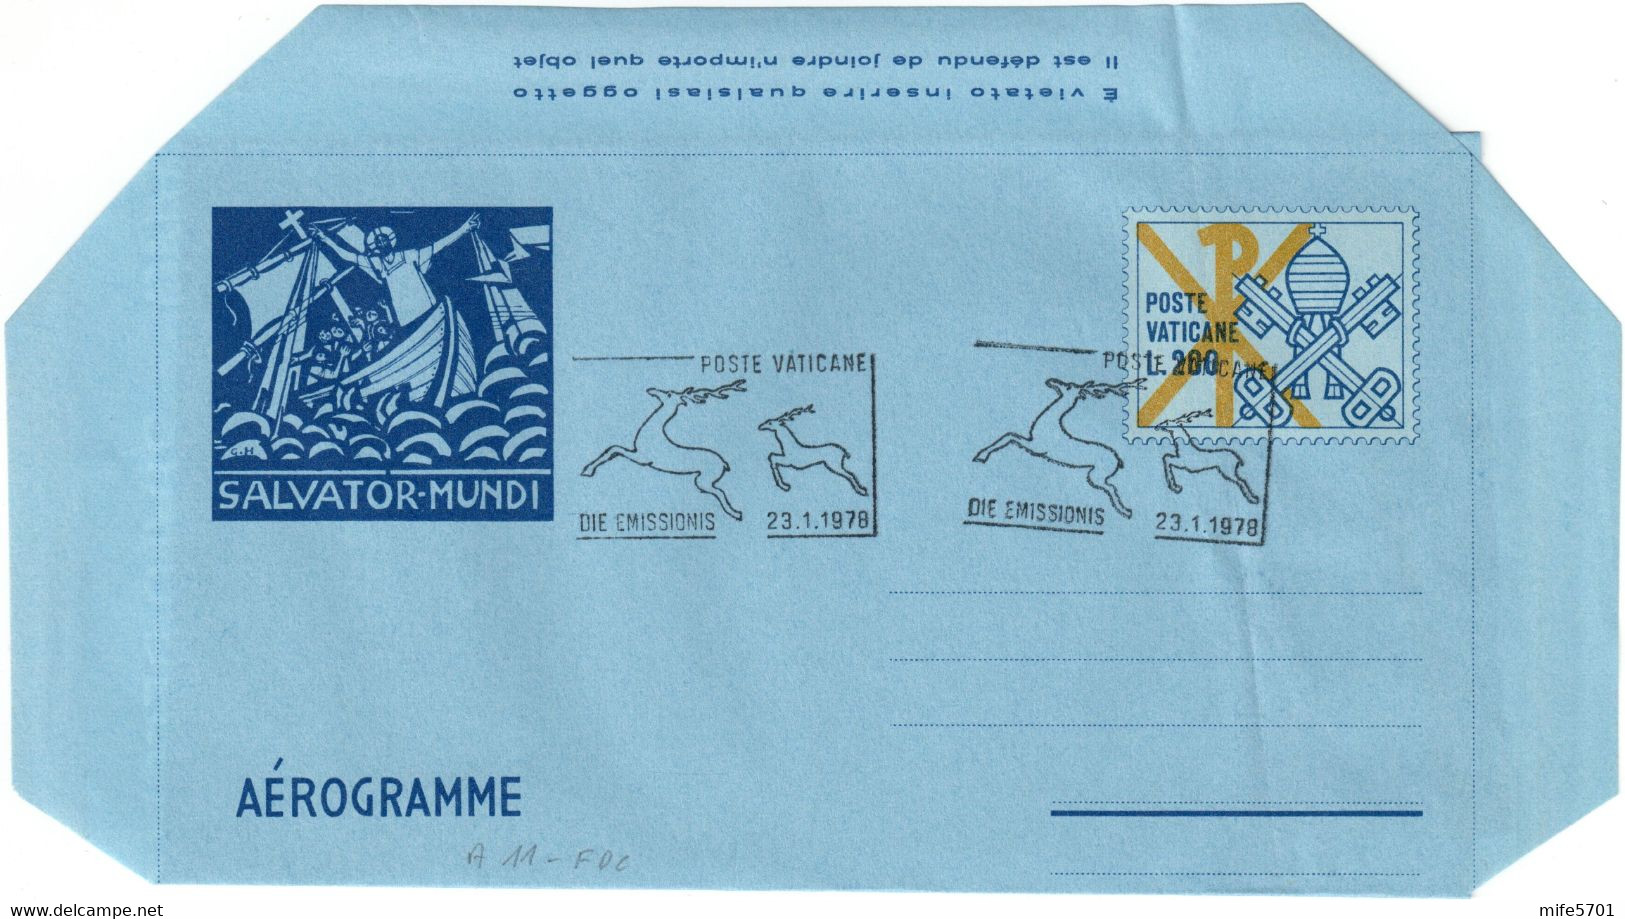 VATICANO - INTERO POSTALE / AEROGRAMMA TIPO SALVATOR MUNDI L. 200 - 1978 - CATALOGO FILAGRANO "A15" - FDC 23.1.1978 - Postal Stationeries